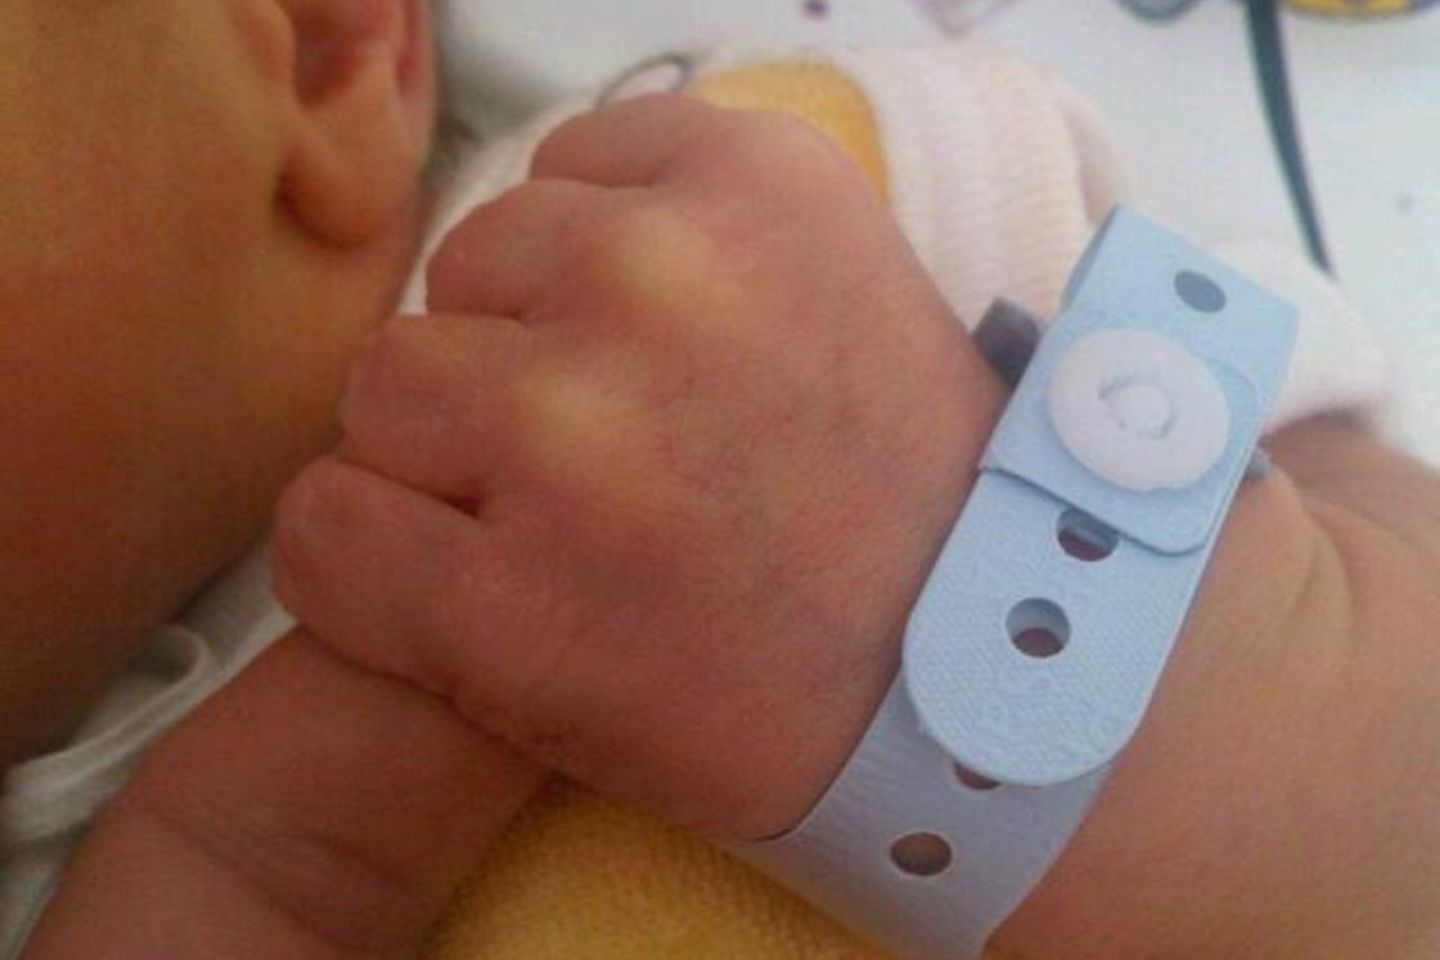 Sonya Kraus postete jetzt auf ihrer Facebook-Seite dieses niedliche Bild ihres neugeborenen Sohnes.